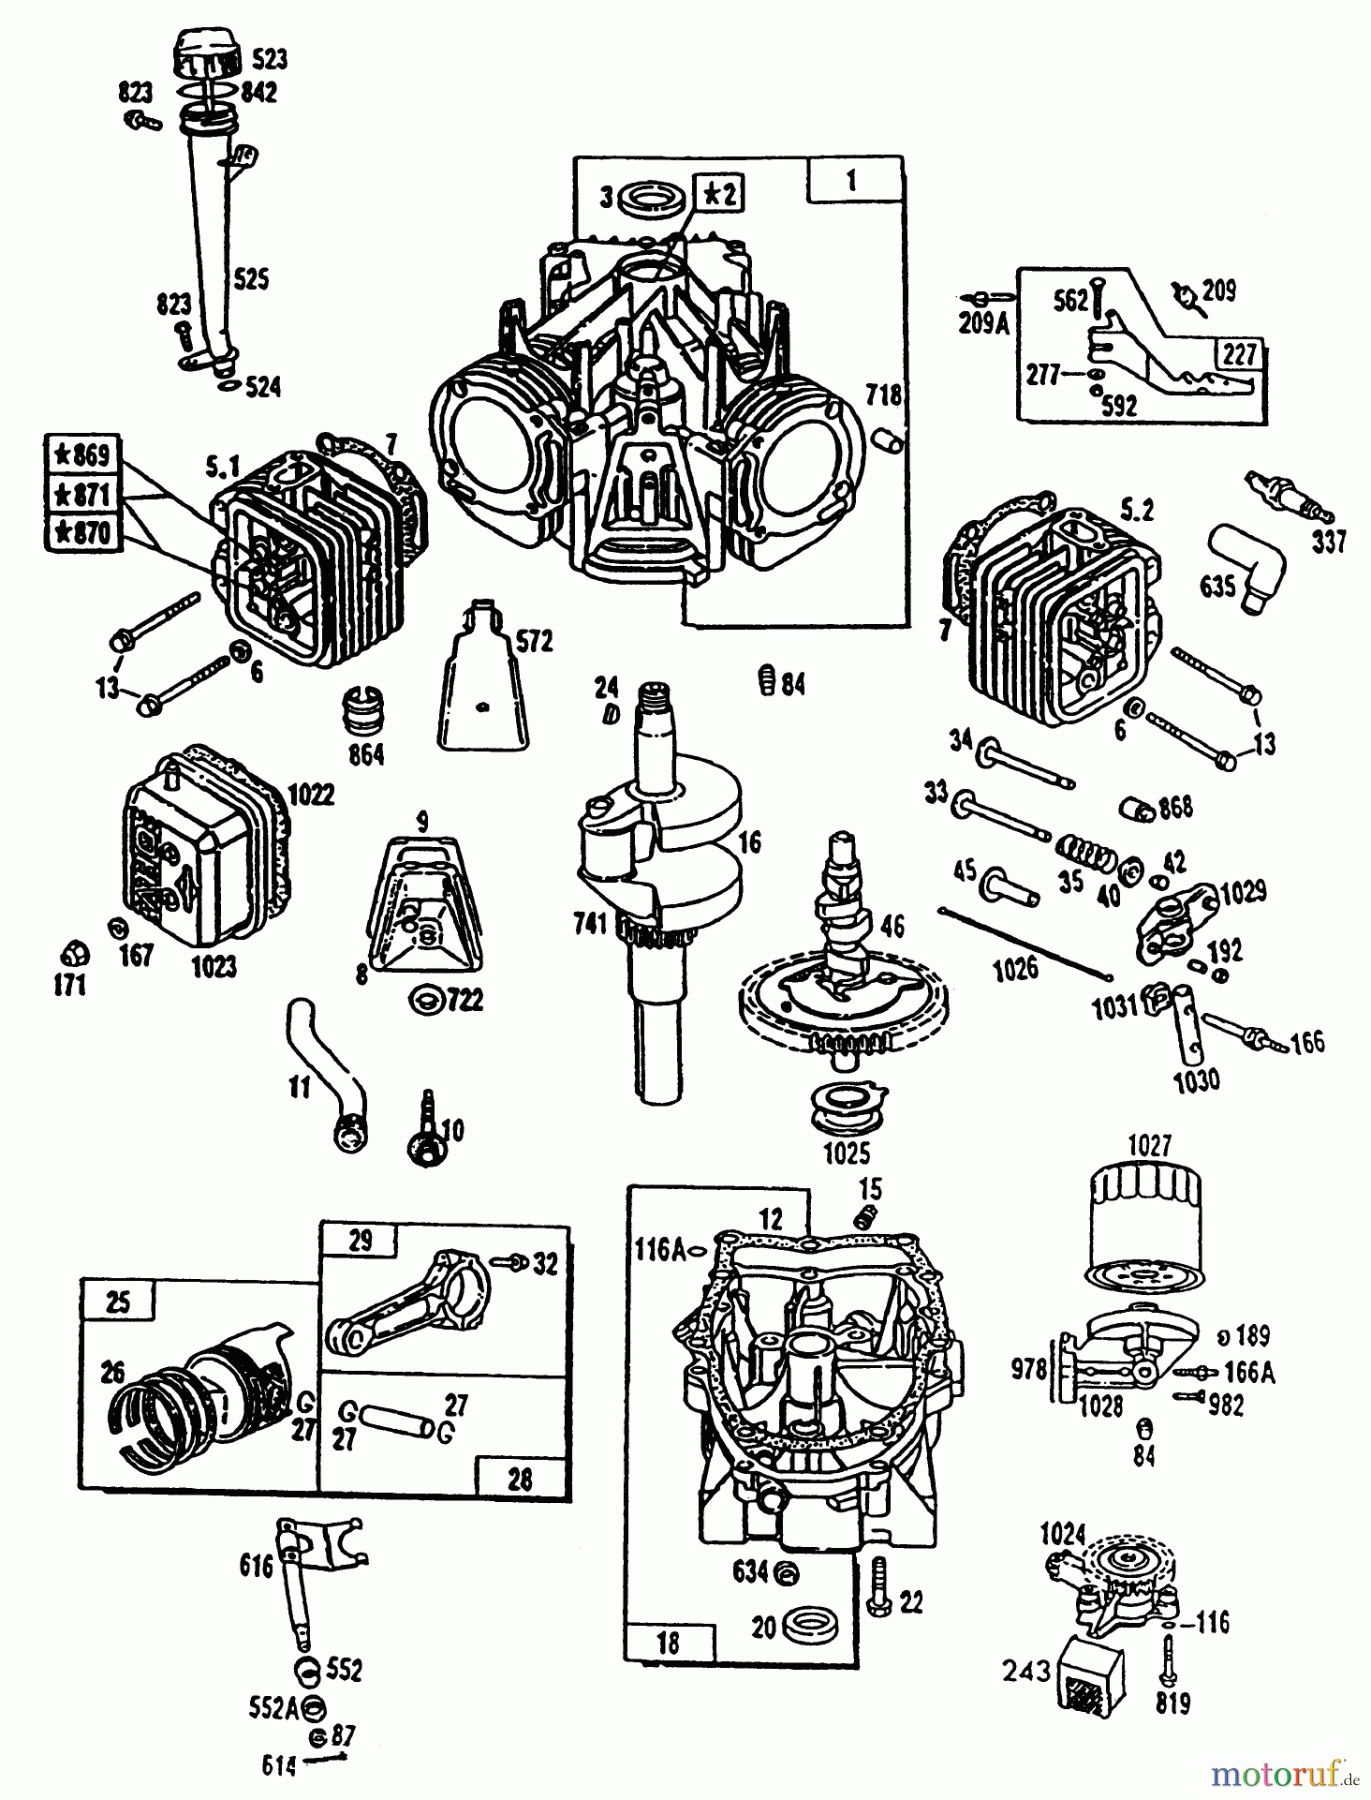  Toro Neu Mowers, Lawn & Garden Tractor Seite 2 R2-16BE01 (246-H) - Toro 246-H Yard Tractor, 1992 (2000001-2999999) ENGINE TORO POWER PLUS #1